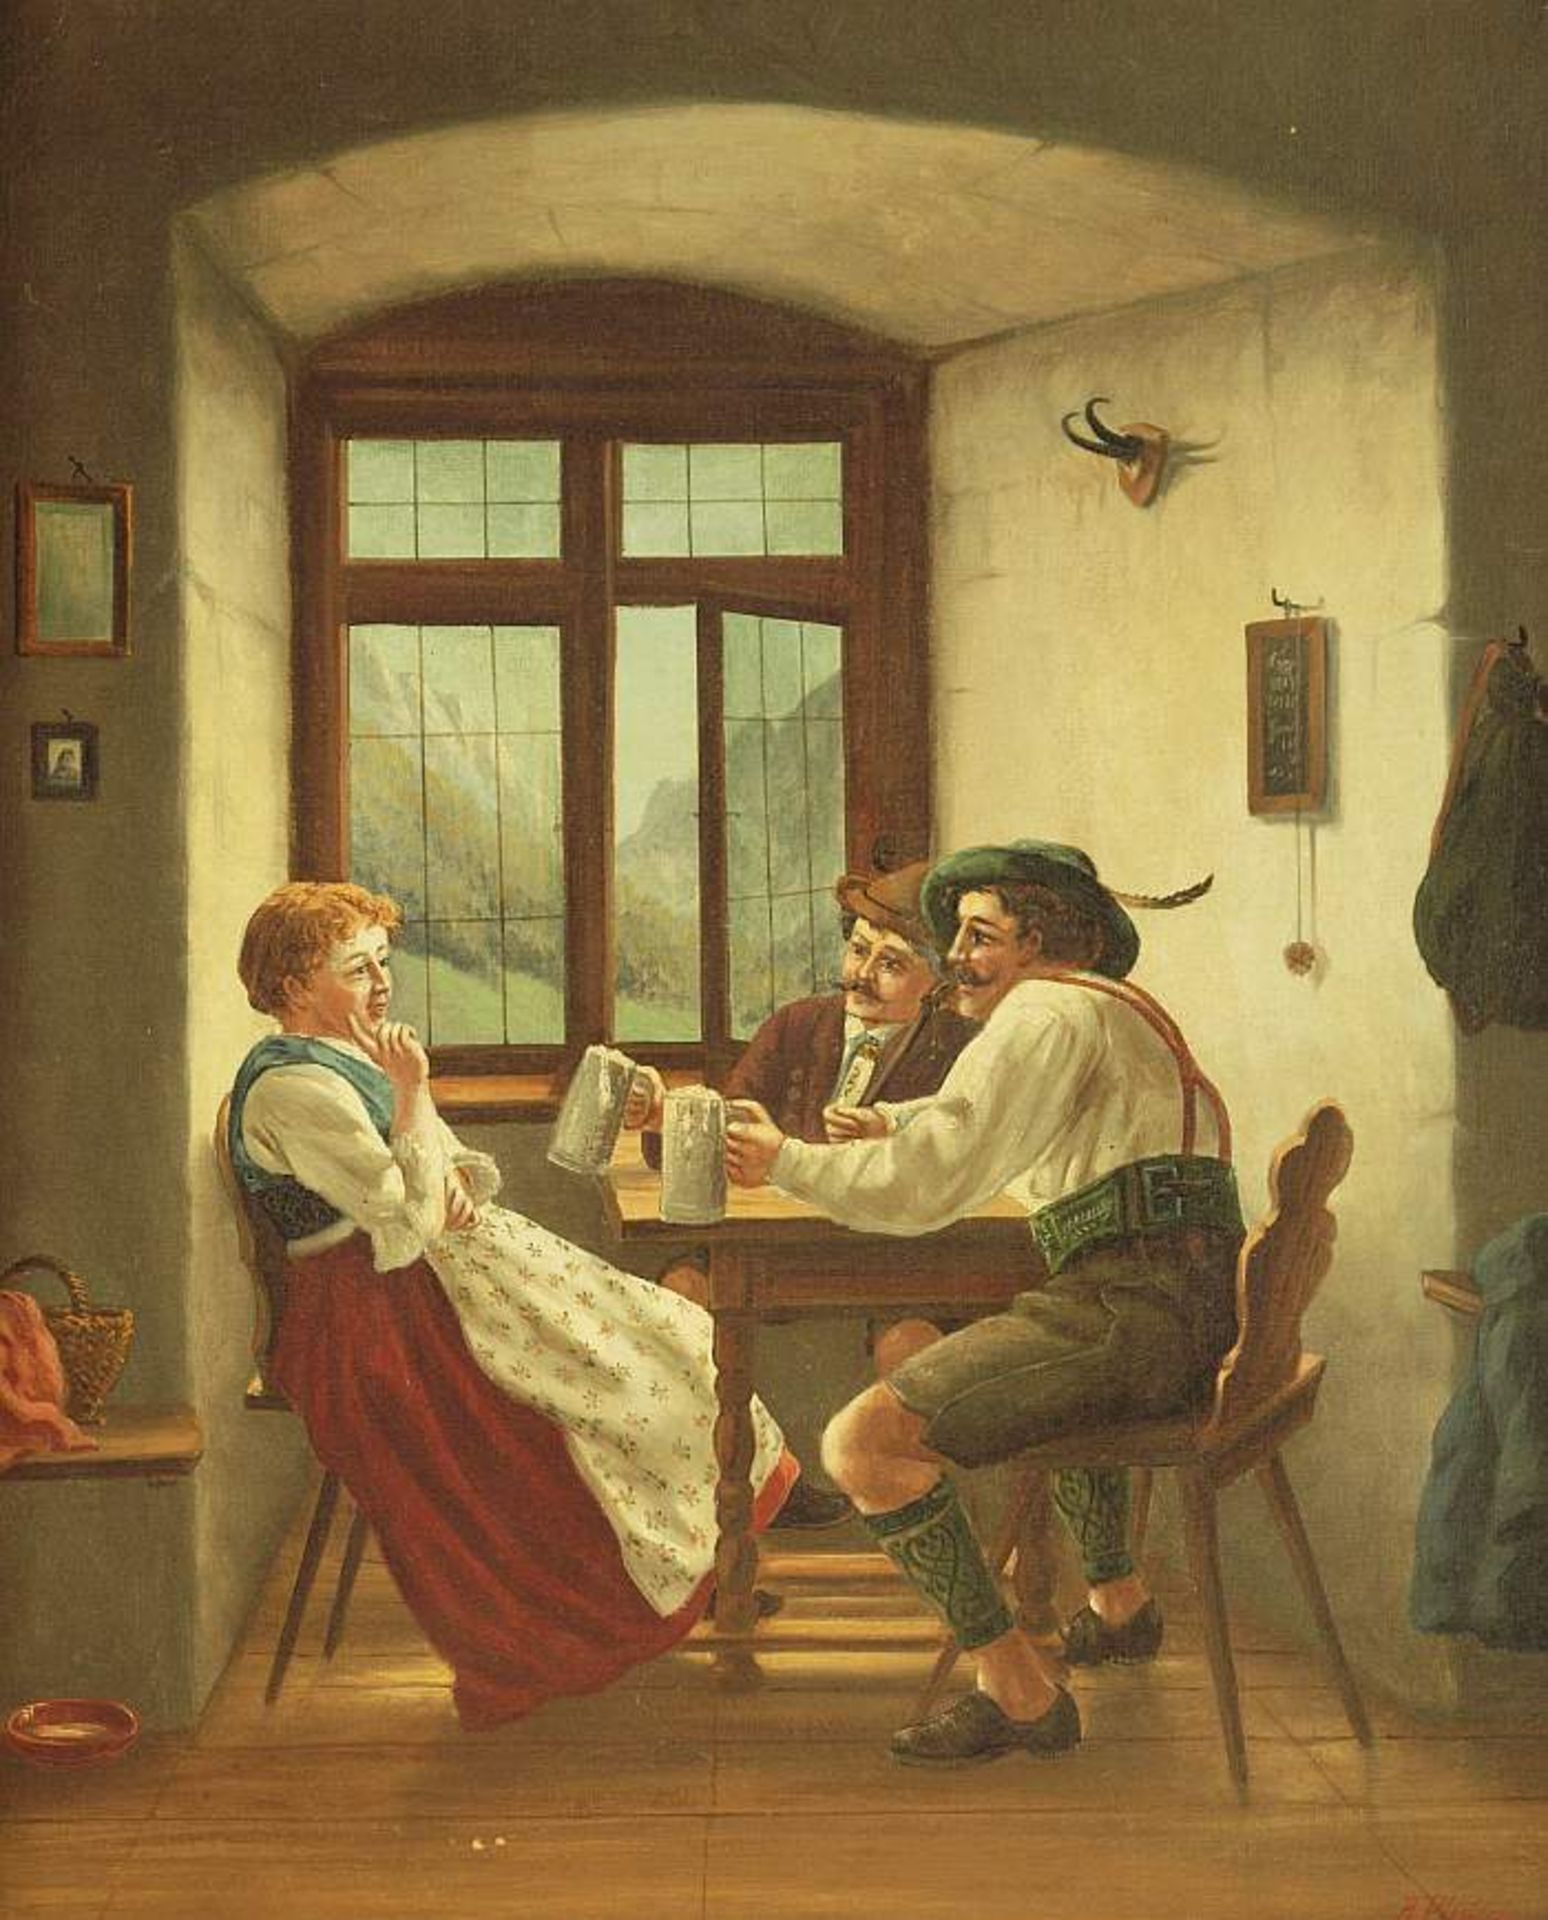 PFISTERER, A. PFISTERER, A. Ende 19. Jahrhundert. Stubeninterieur, zwei Burschen mit junger Frau